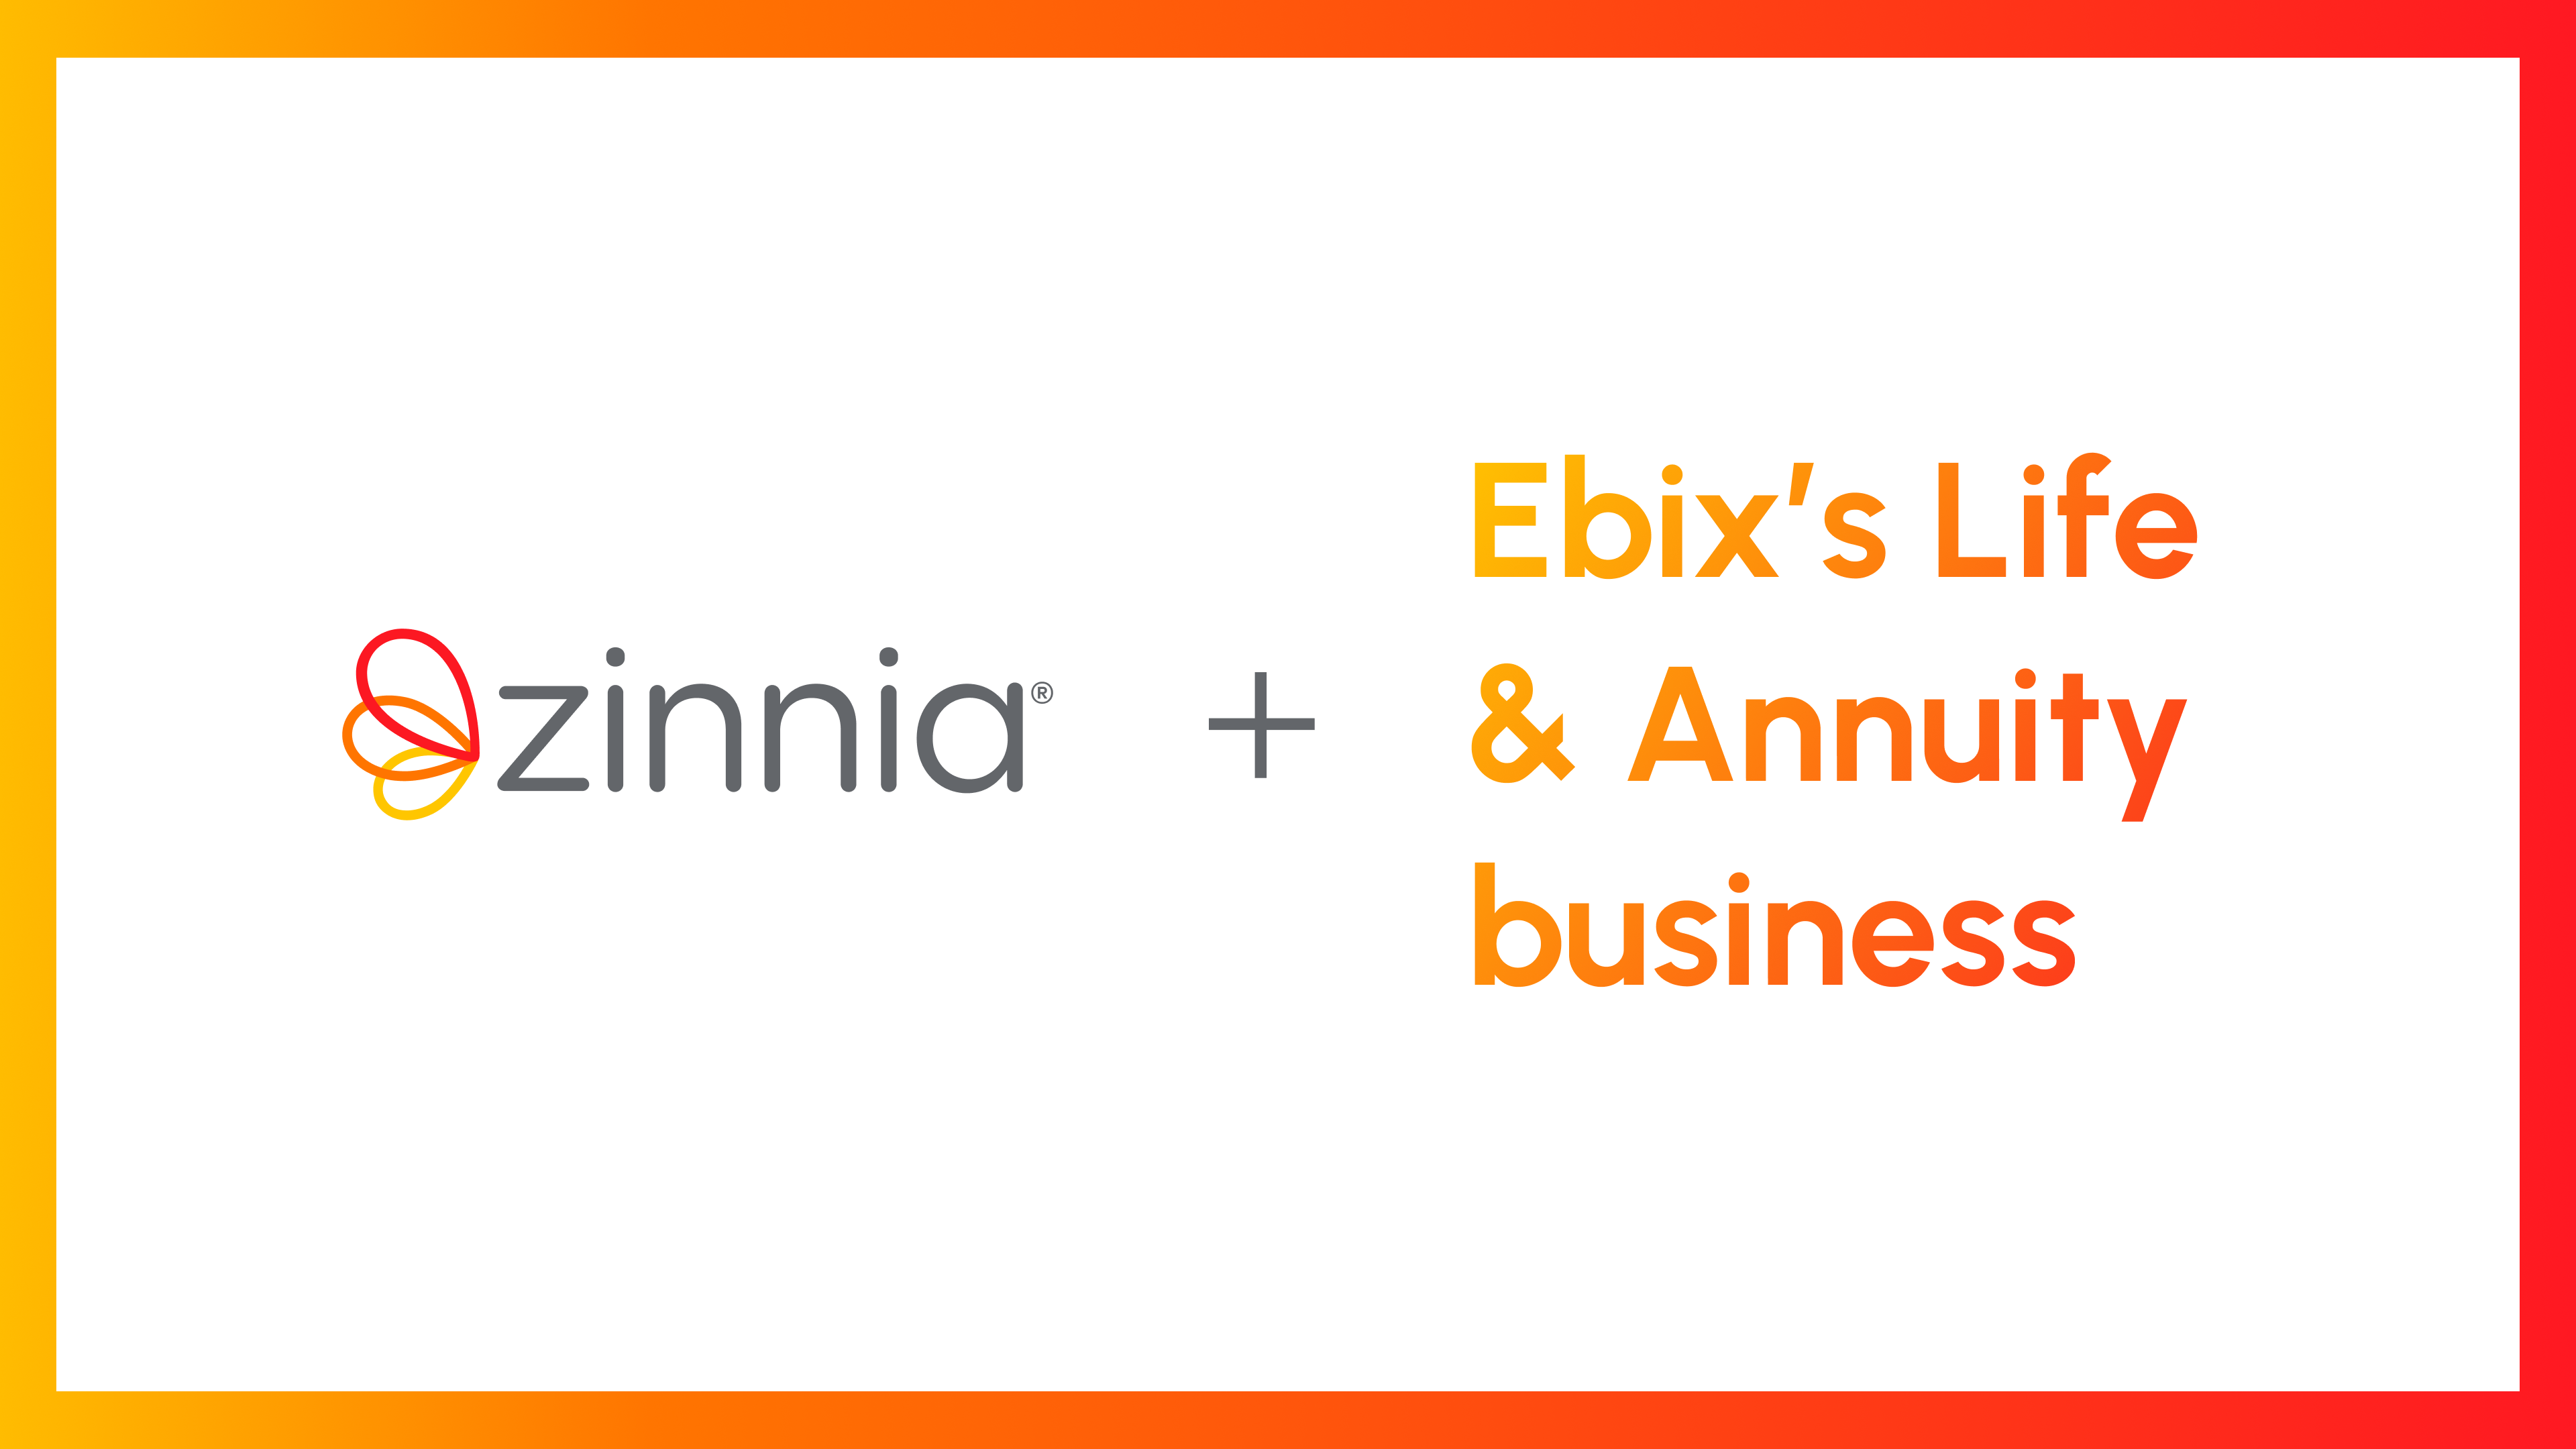 Zinnia + Ebix's Life & Annuity Business